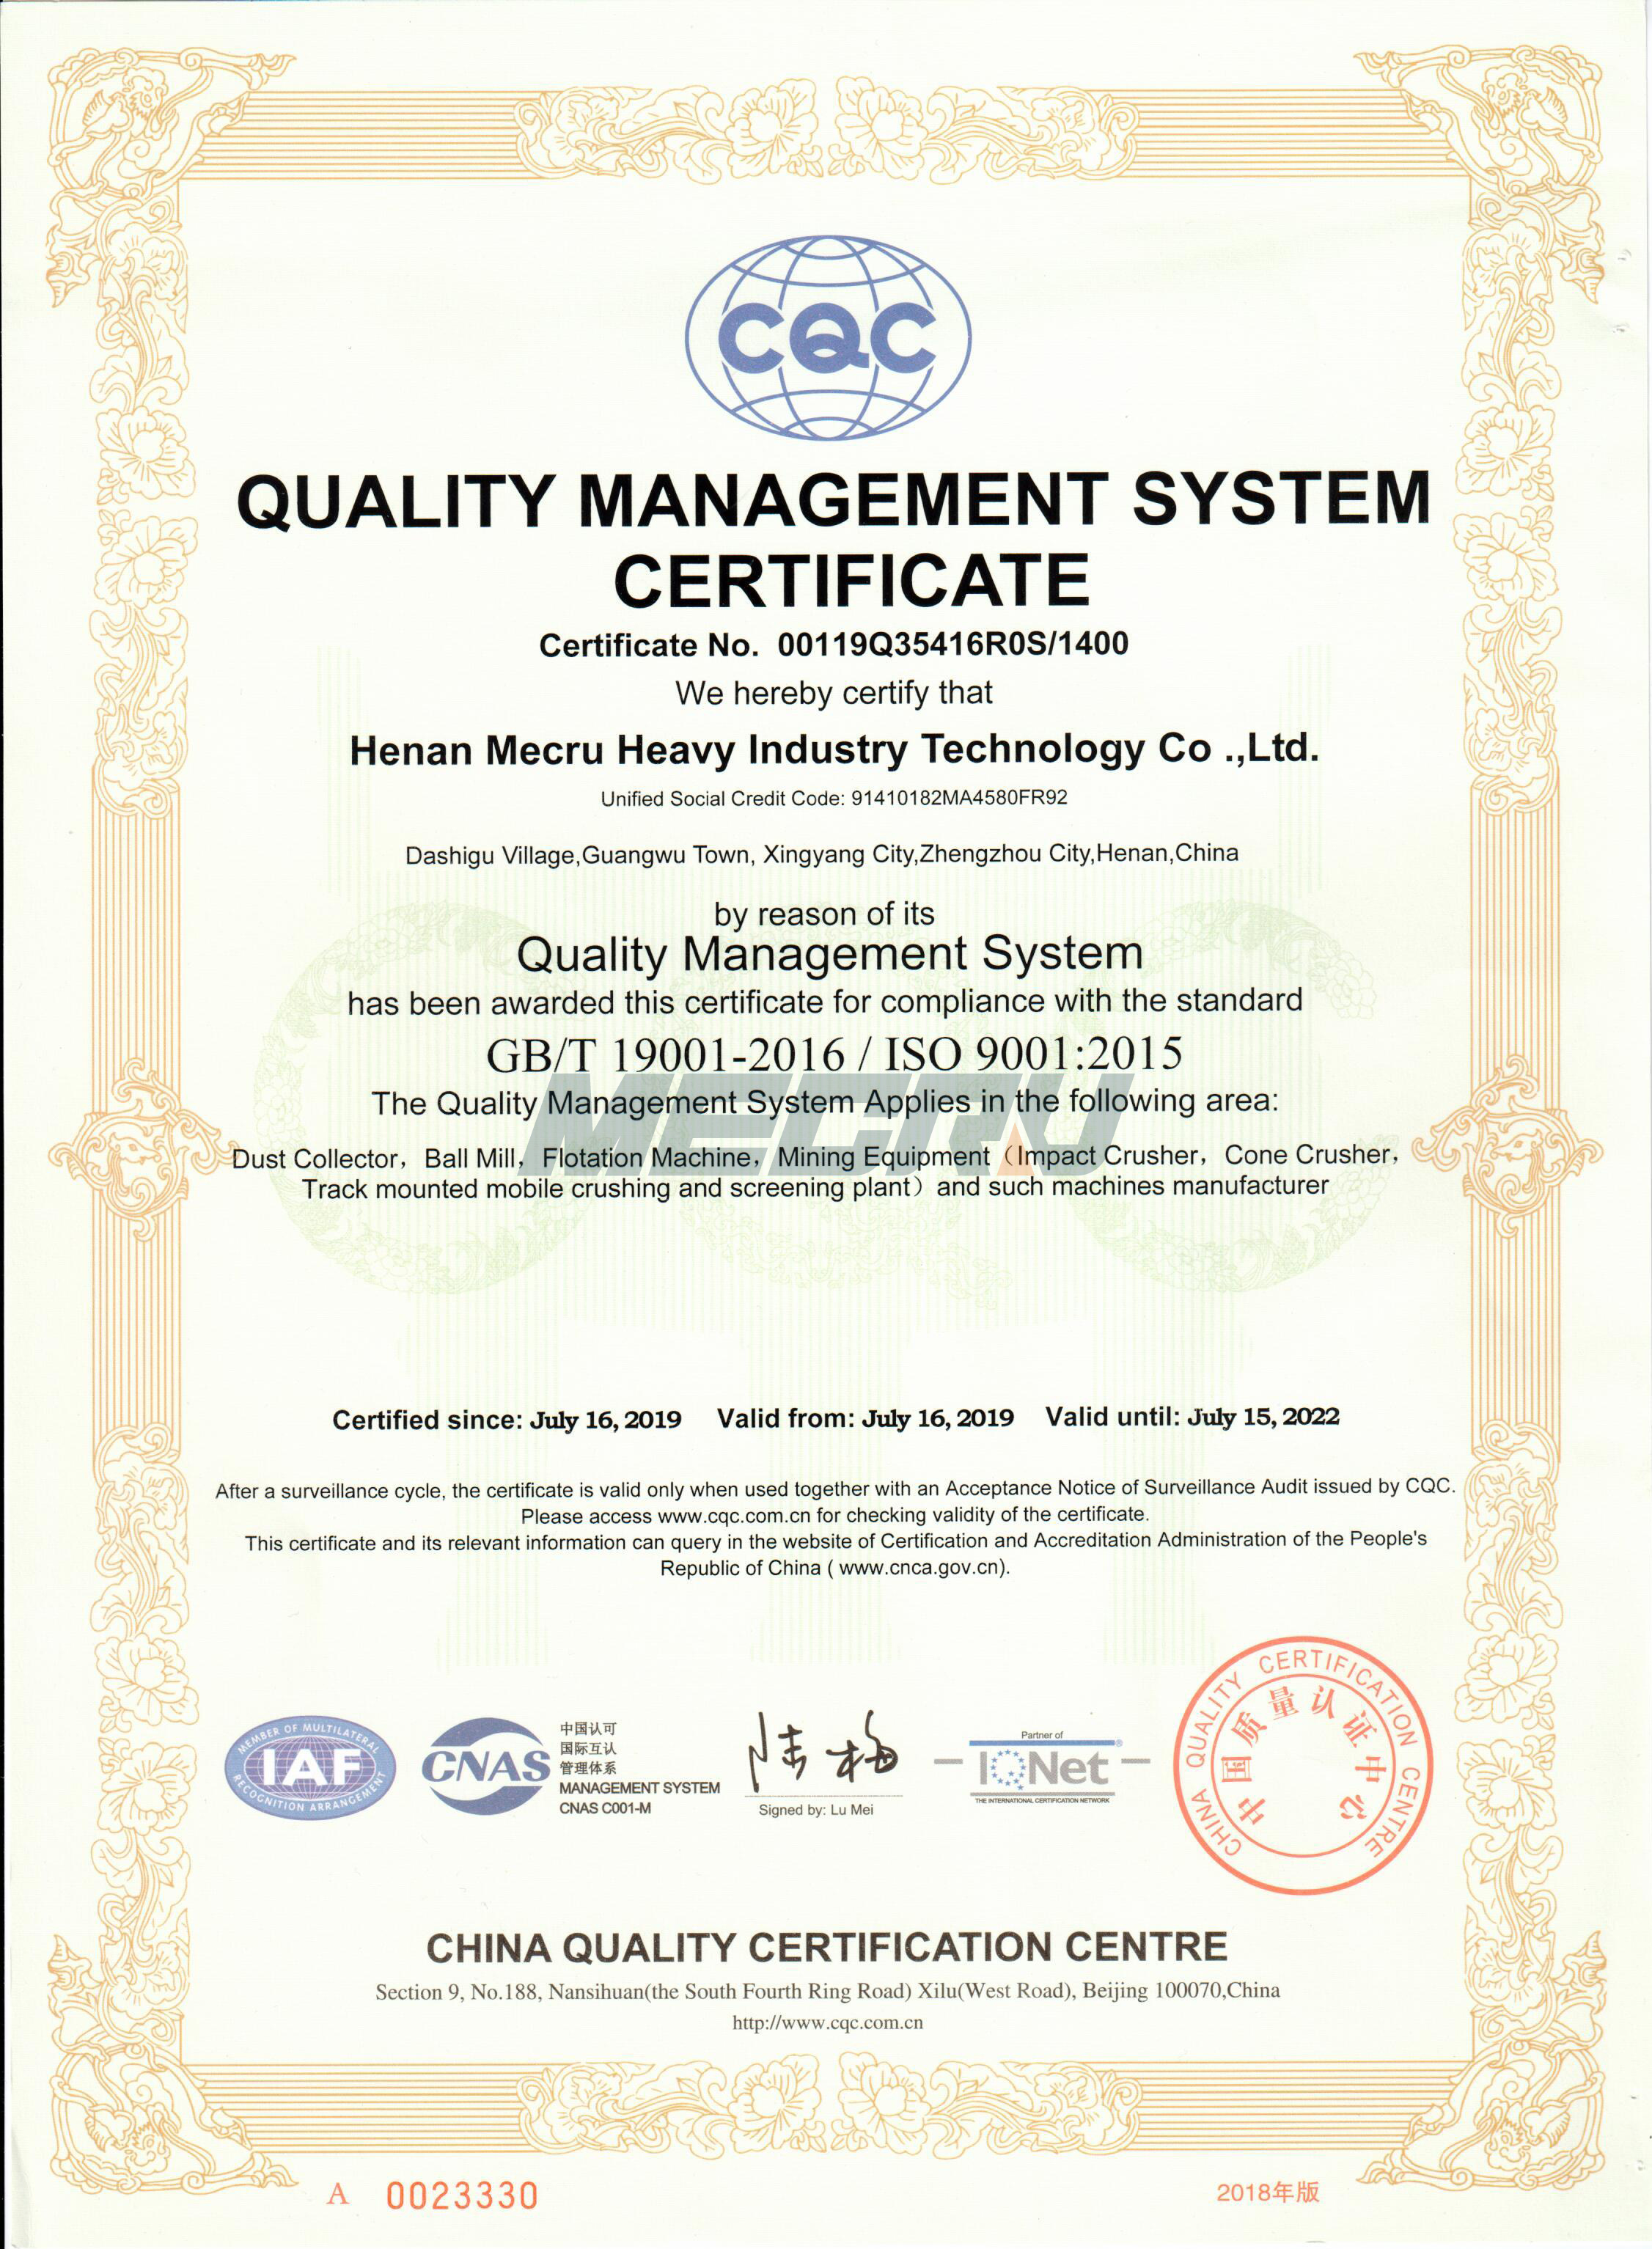 Certifiering av kvalitetsledningssystem (2)